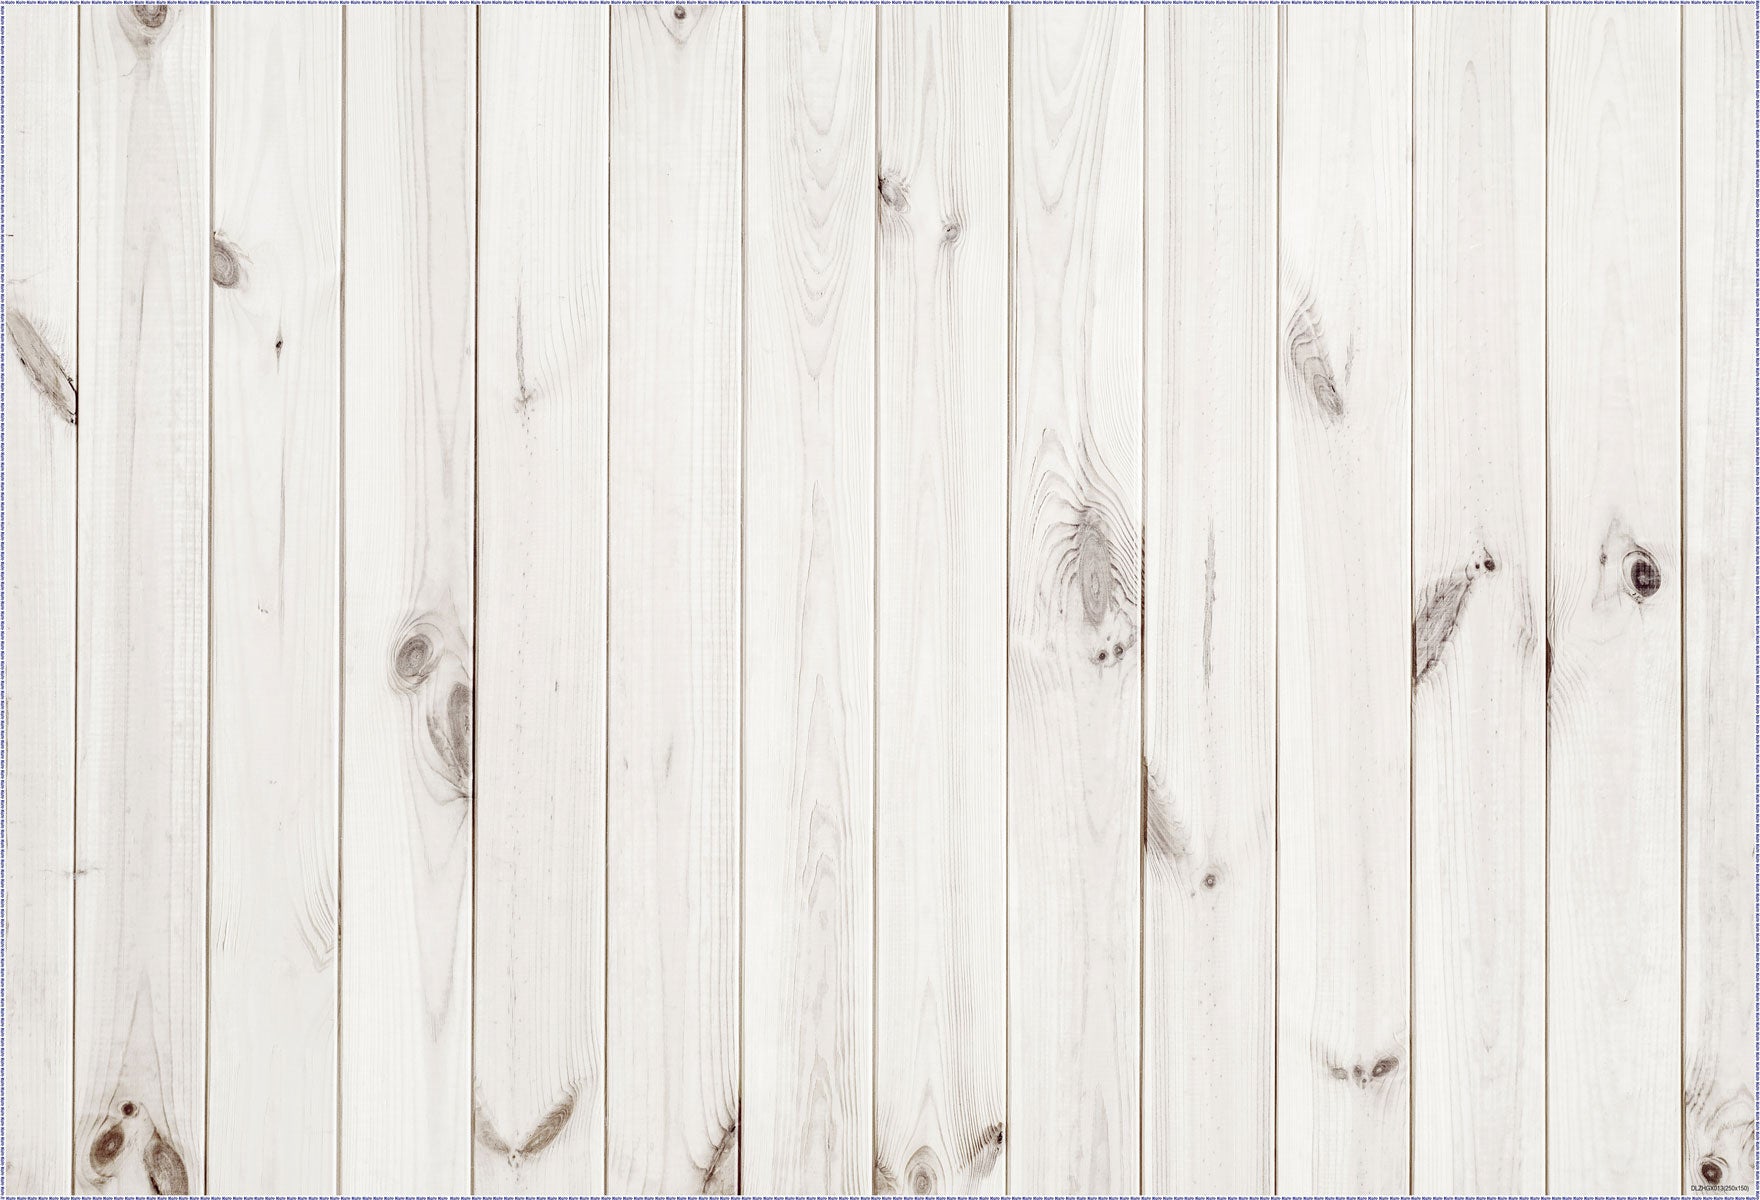 Kate Fenster weißer Vorhang Frühlingshintergrund + Weiß Retro Holz Bodenmatte